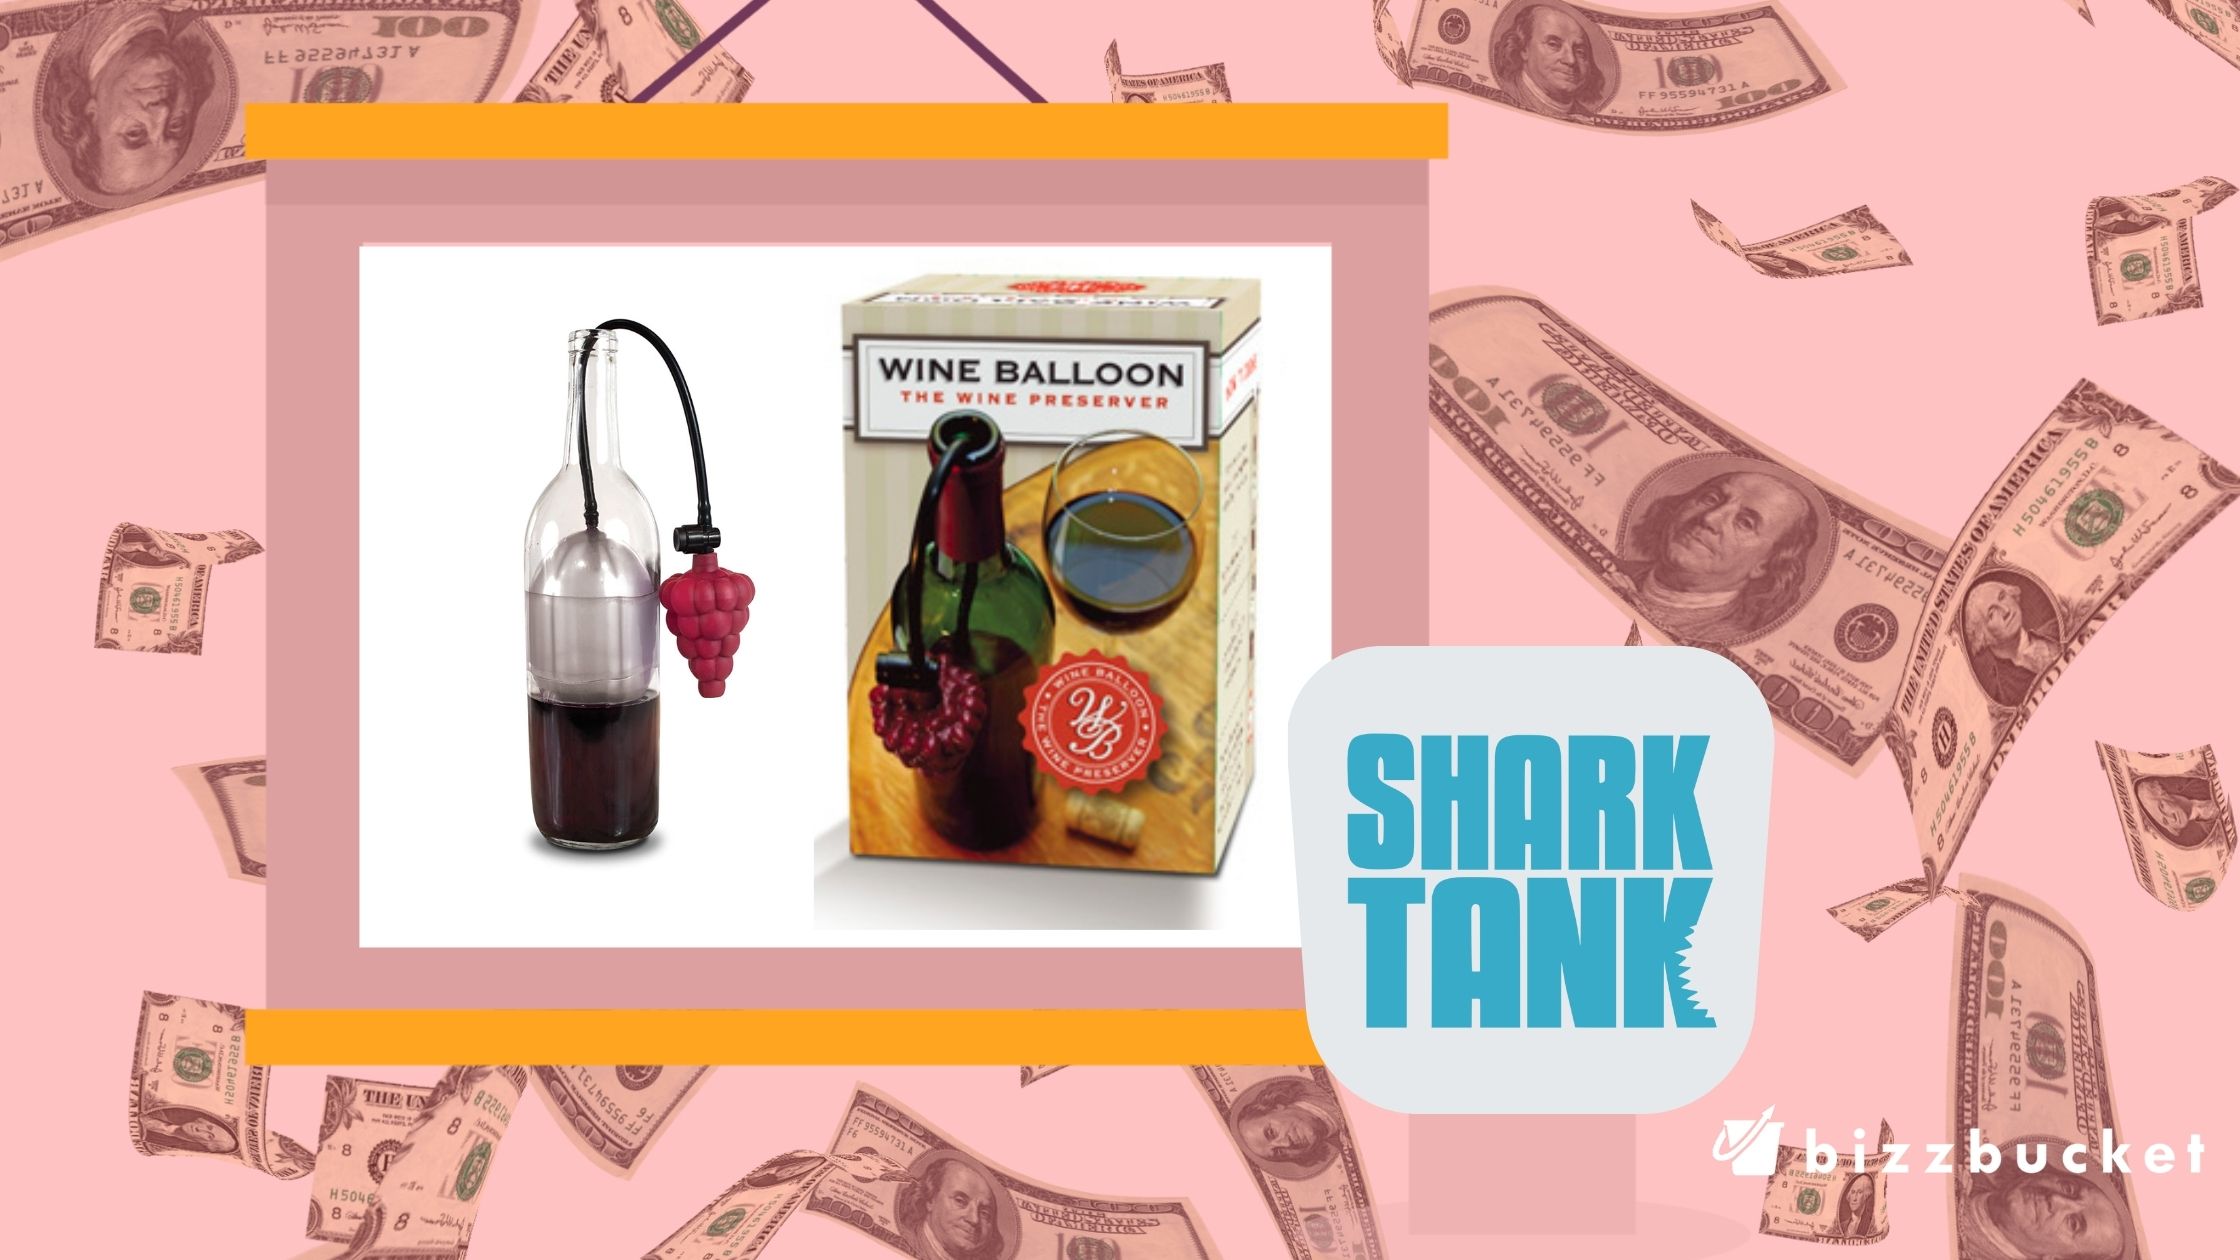 Wine Balloon shark tank update